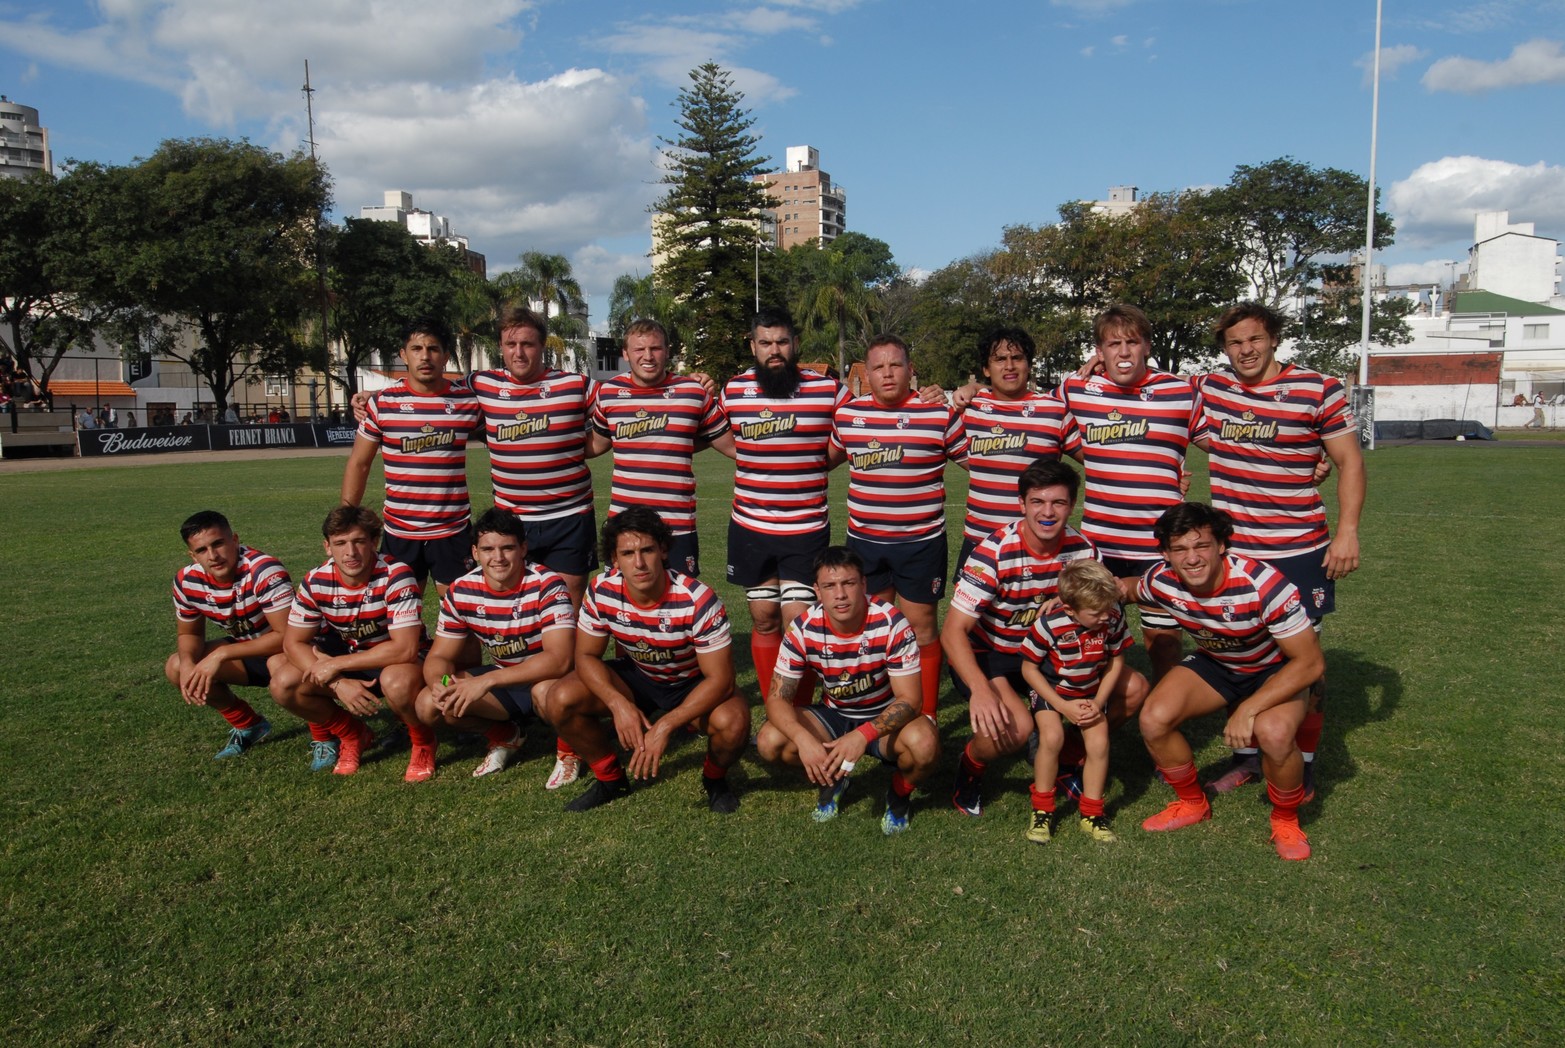 El equipo titular que presentó la visita. Santa Fe Rugby logró un importante triunfo en Paraná. Dominó y venció 36 a 21 al Club Estudiantes.